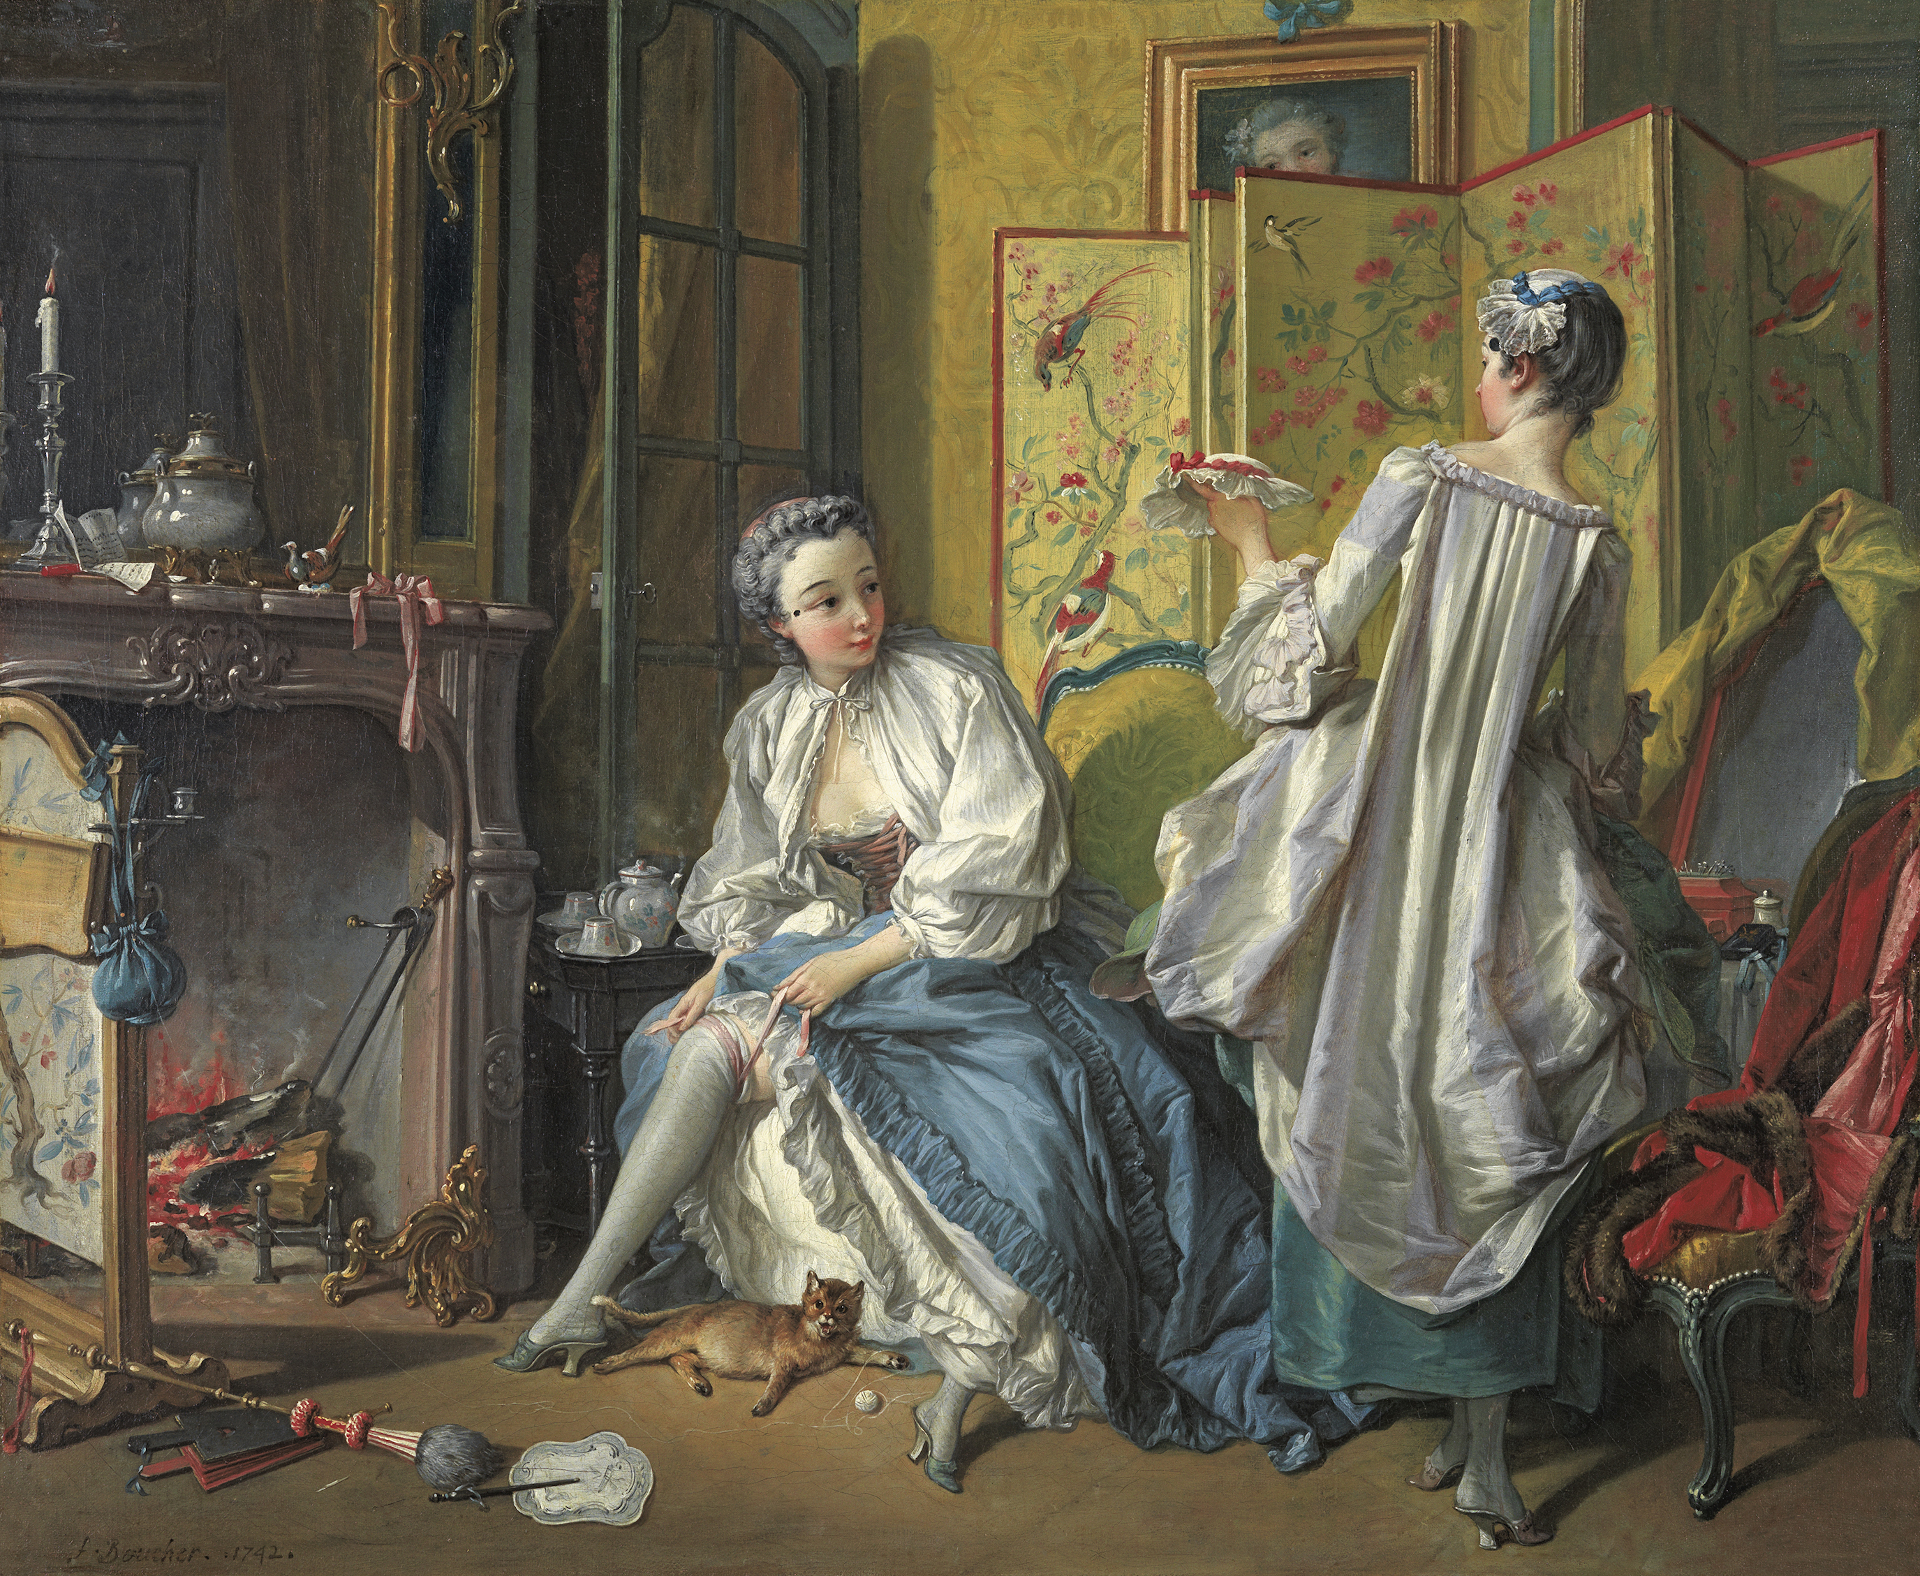 Gemälde Die Morgentoilette von François Boucher. zu sehen ist eine Frau, die sich ihre Strümpfe anzieht. Eine andere Frau sieht man von hinten. Sie gibt der sitzenden Frau einen Hut.